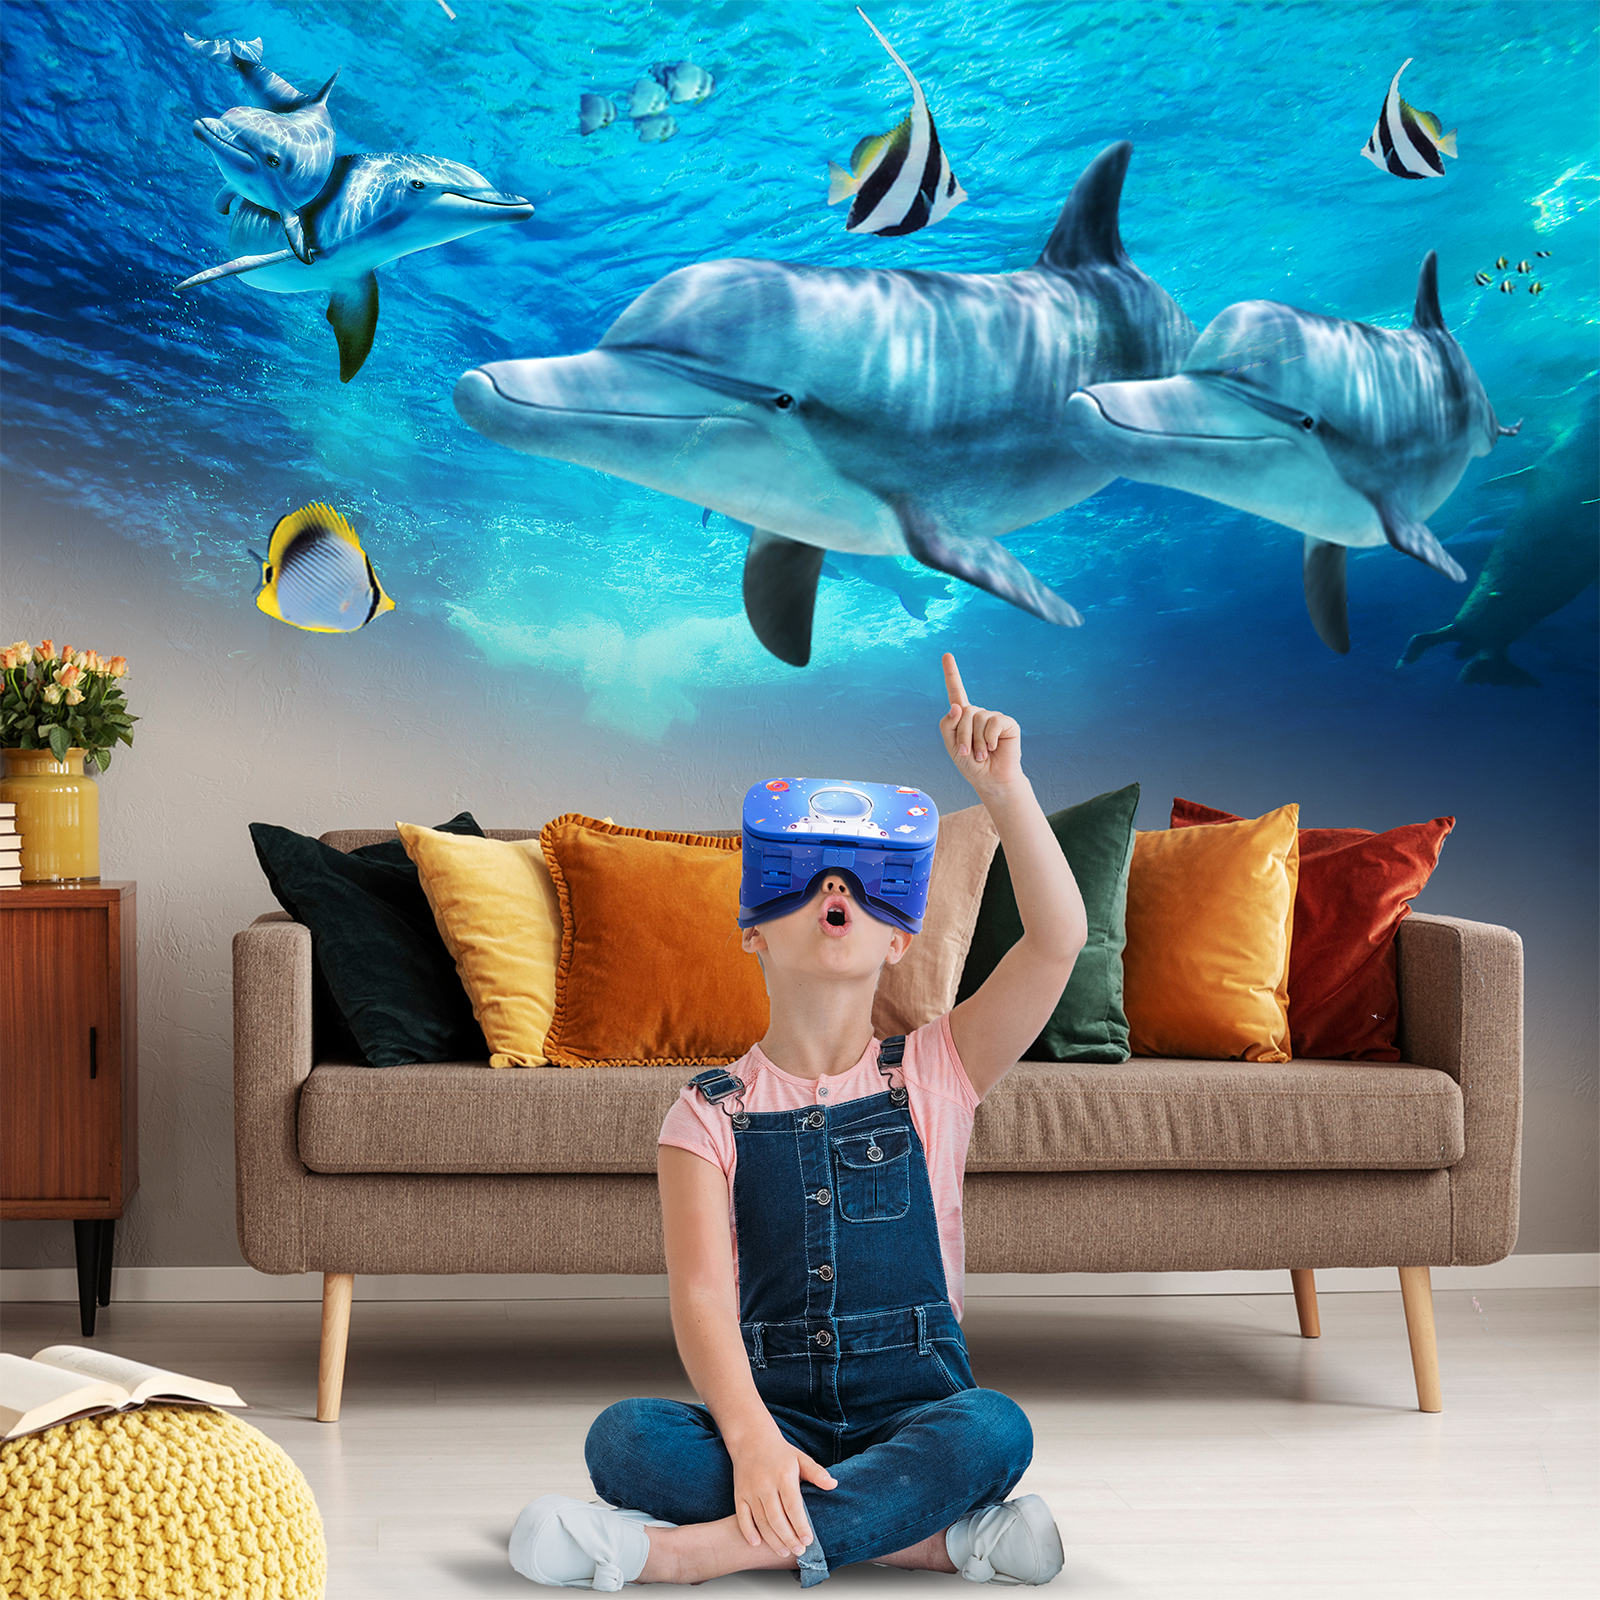 DESTEK VR Dream Headset for Kids - DESTEK